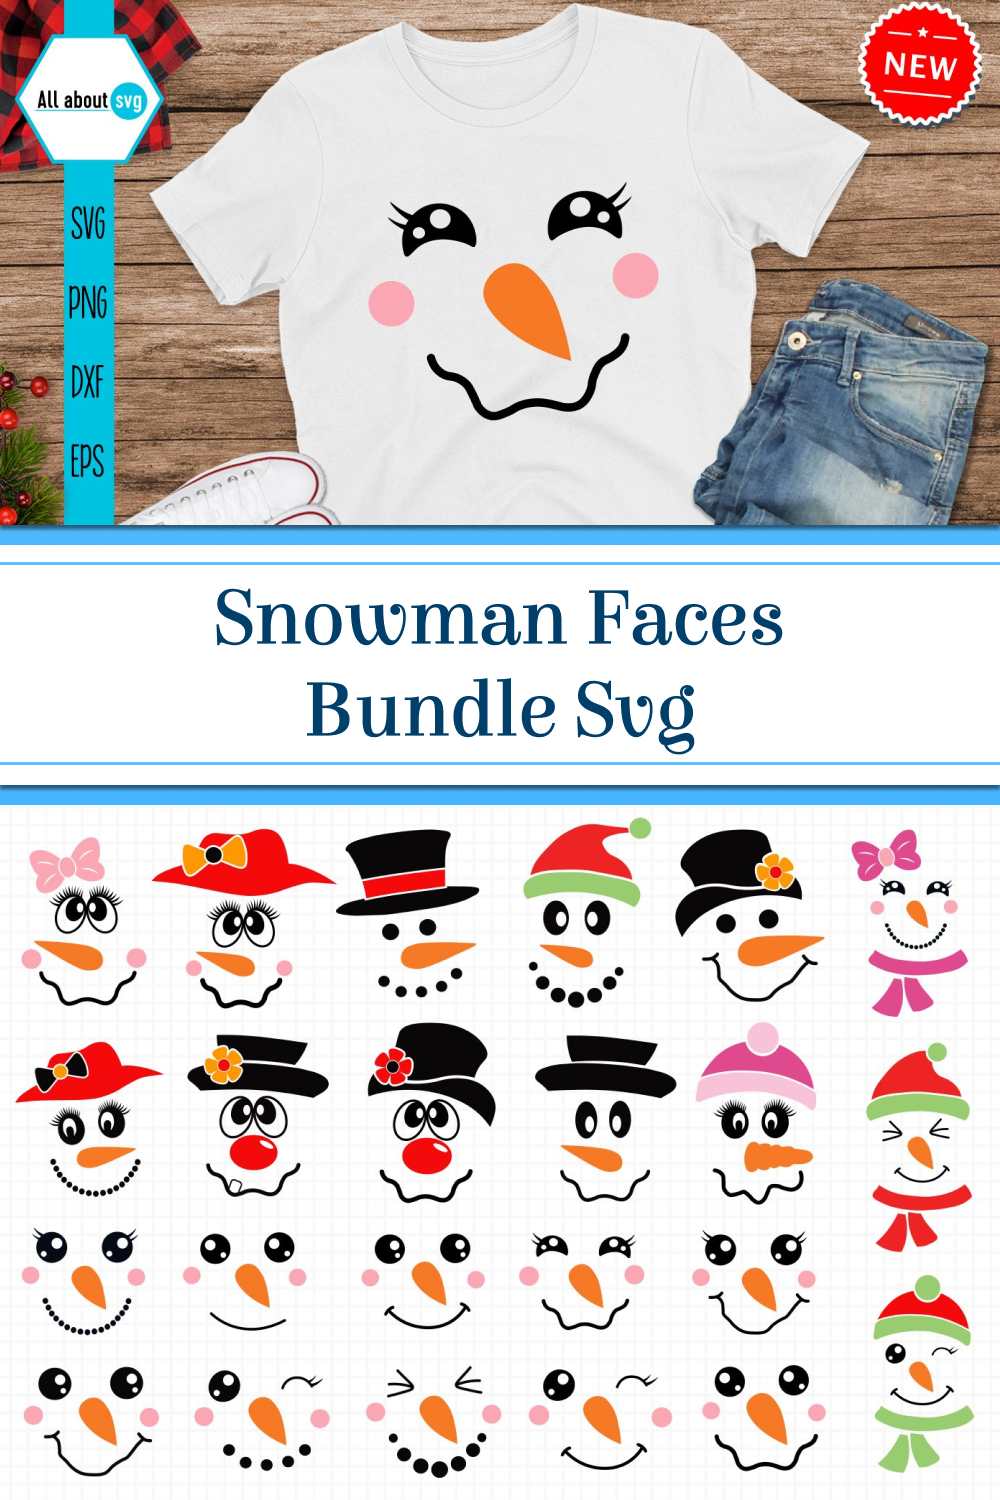 Snowman faces bundle svg of pinterest.